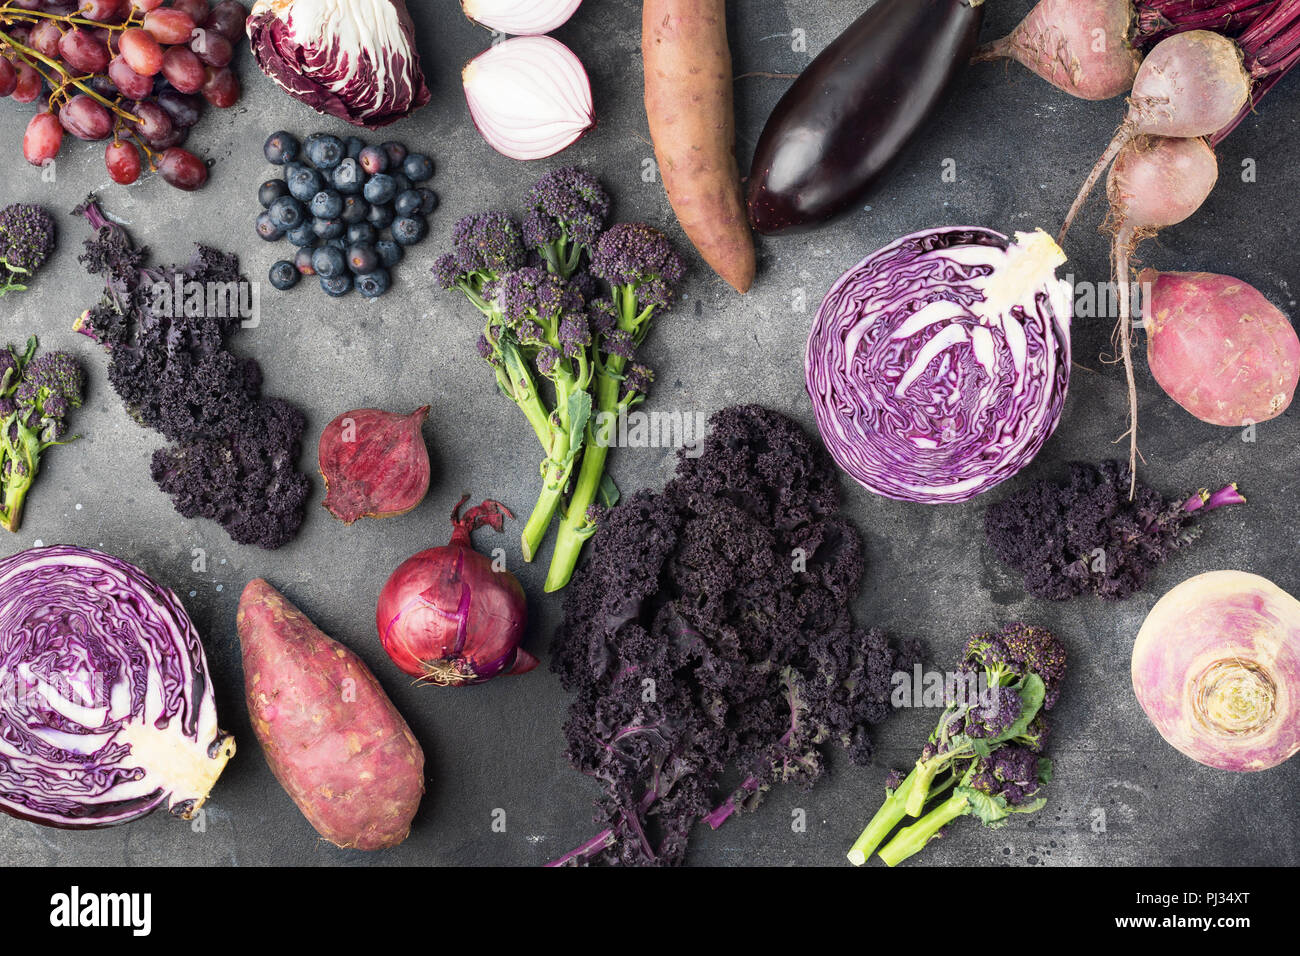 Fruits et légumes contexte en violet, vert et rouge foncé, le chou kale couleurs de pommes de terre choux brocolis oignons raisins bleuets, vue du dessus, fond gris foncé, selective focus Banque D'Images